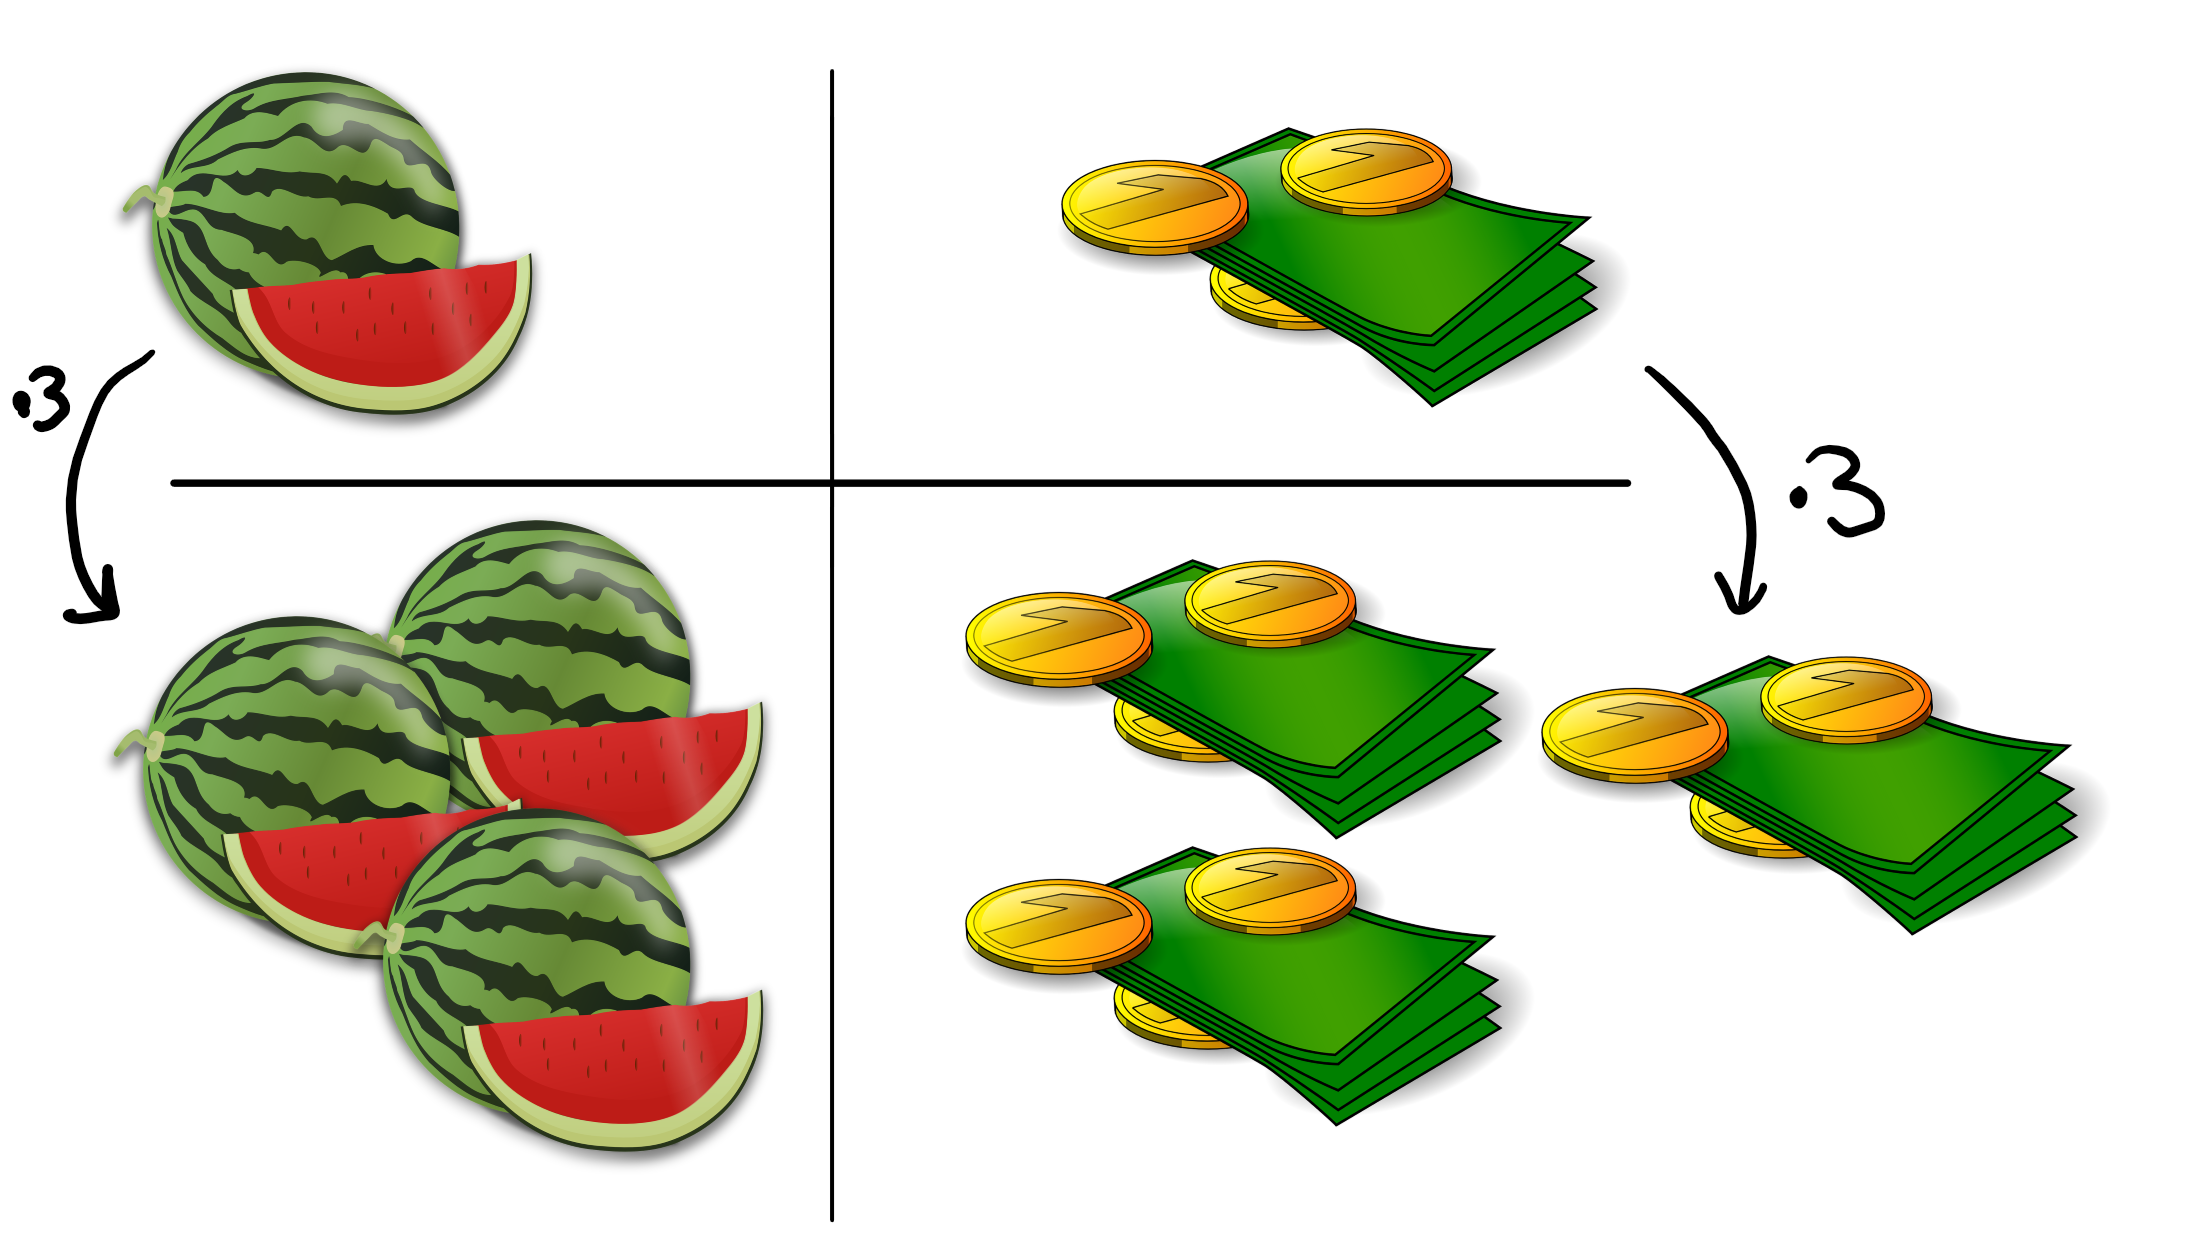 mehr Melonen, mehr Geld